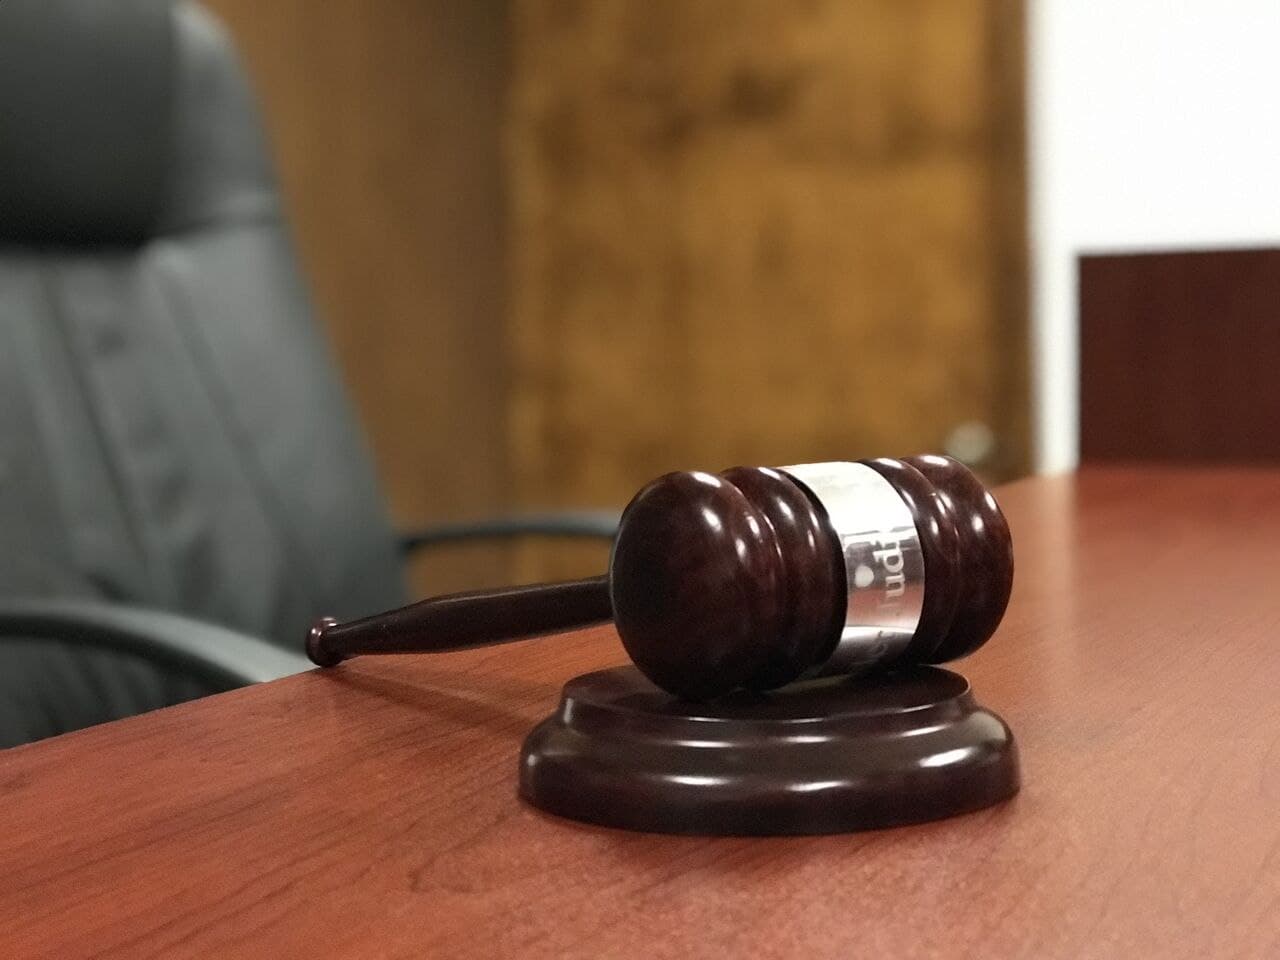 Arranca juicio oral contra sujeto acusado de abusar por diez años de hijastra en Saltillo